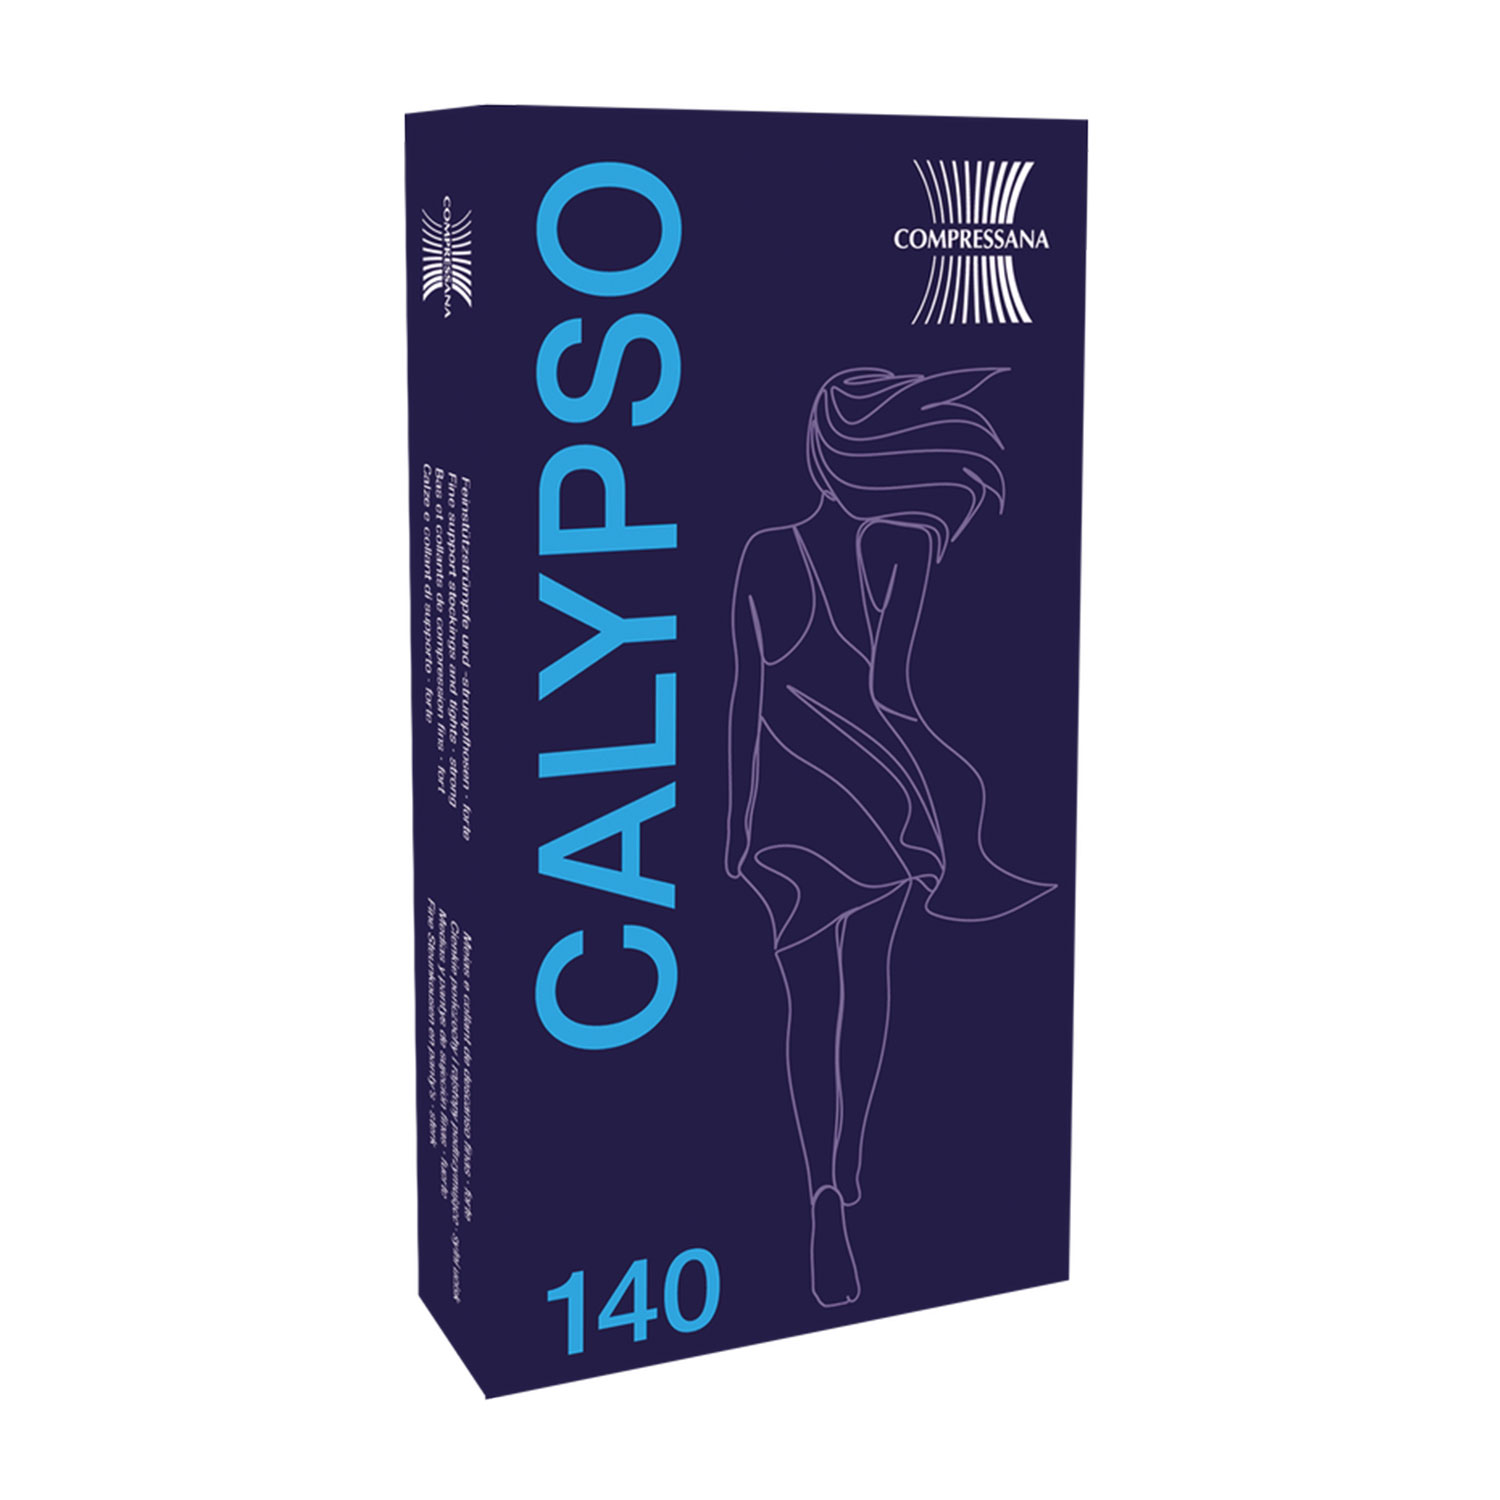 Kniestrümpfe - Fit für die Reise Calypso 140 den Compressana 9015 I (XS) make-up